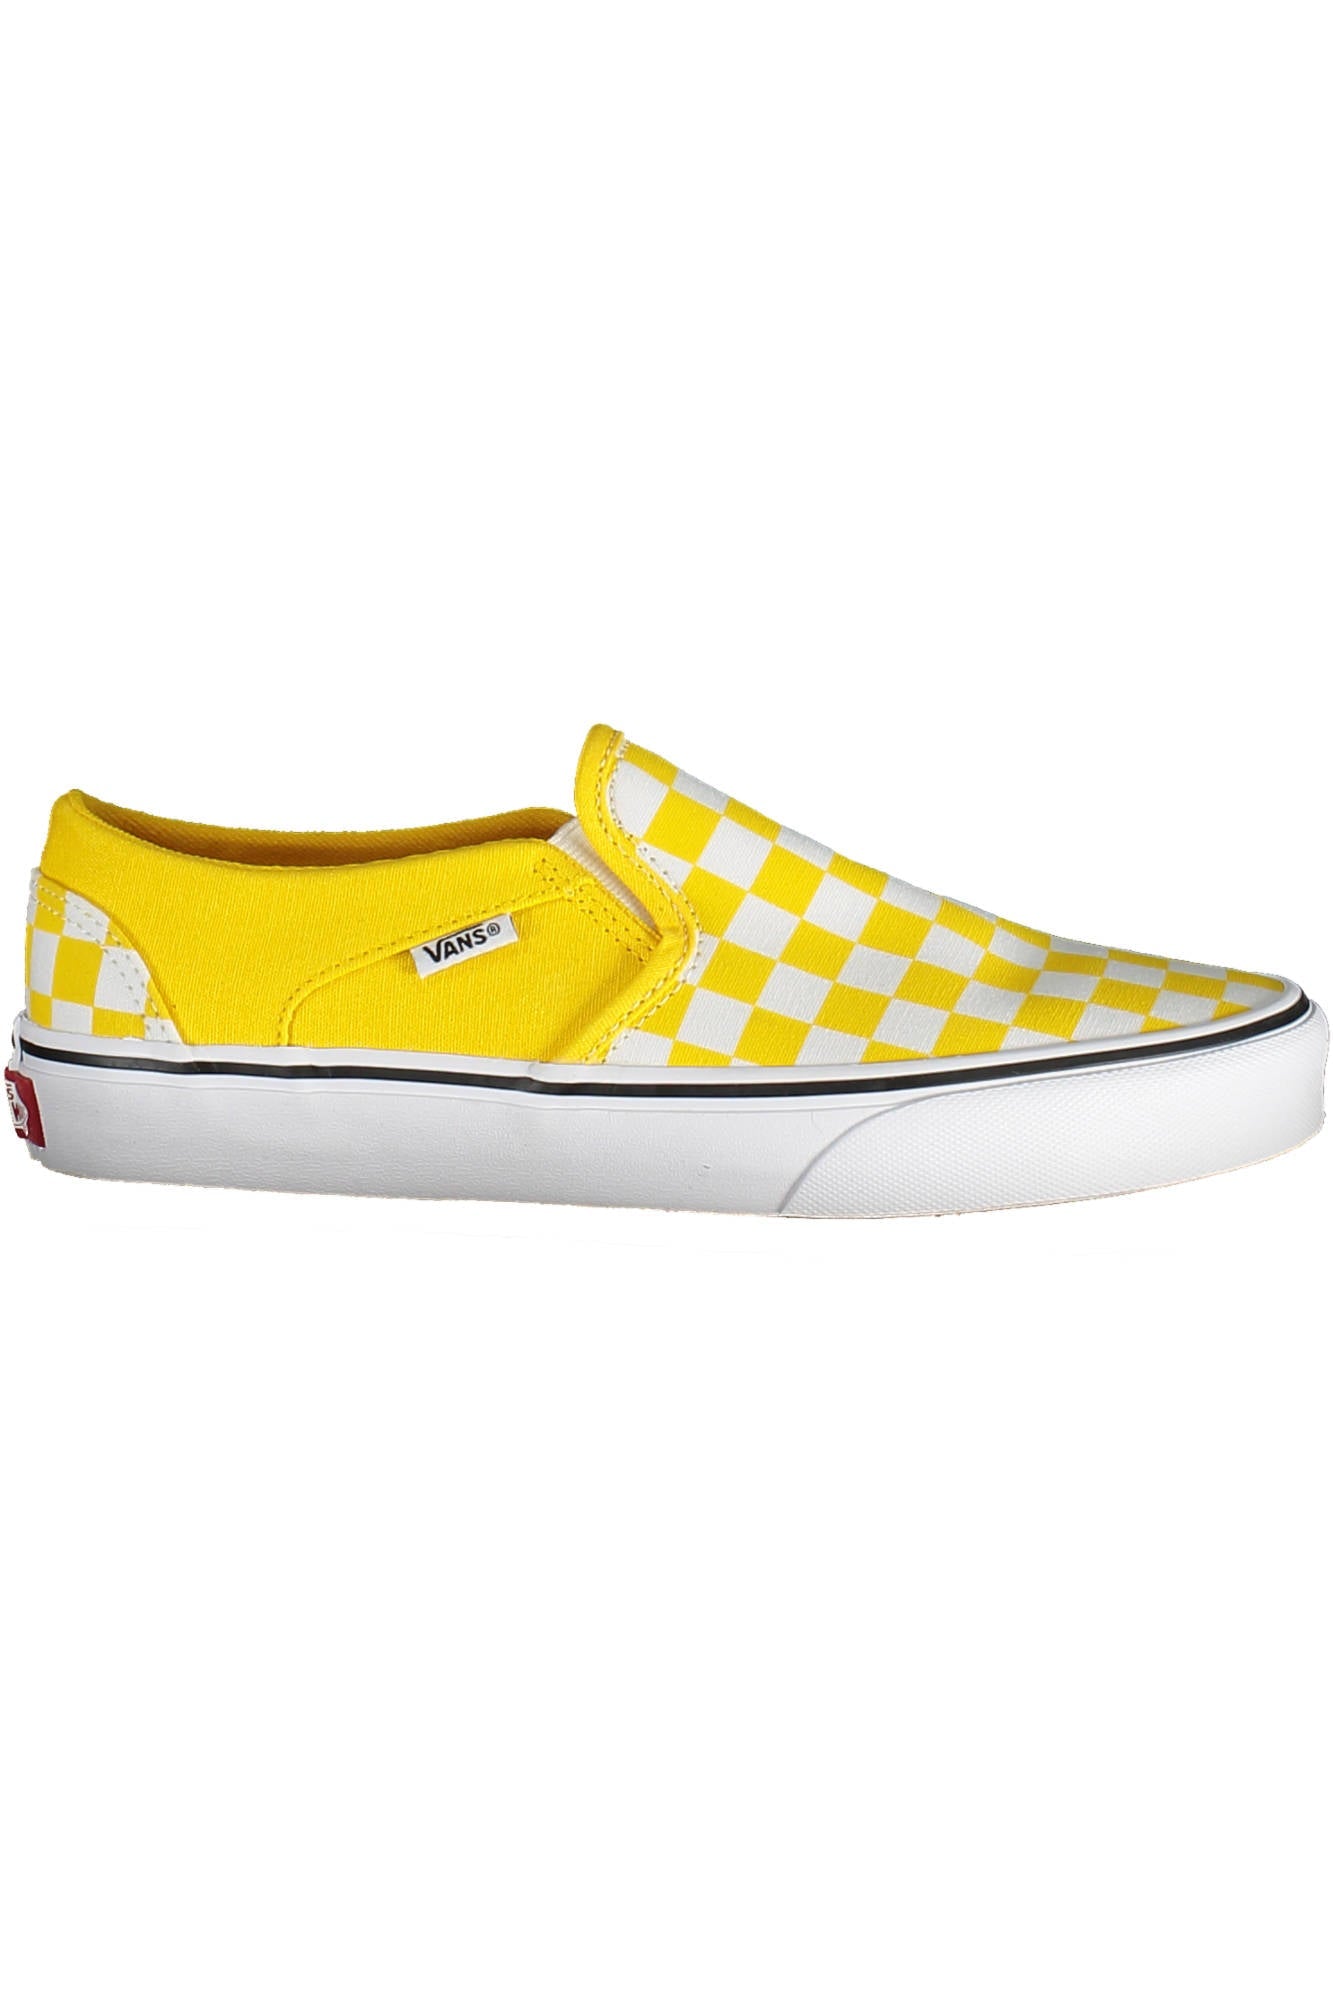 Vans Yellow Sneakers - Fizigo